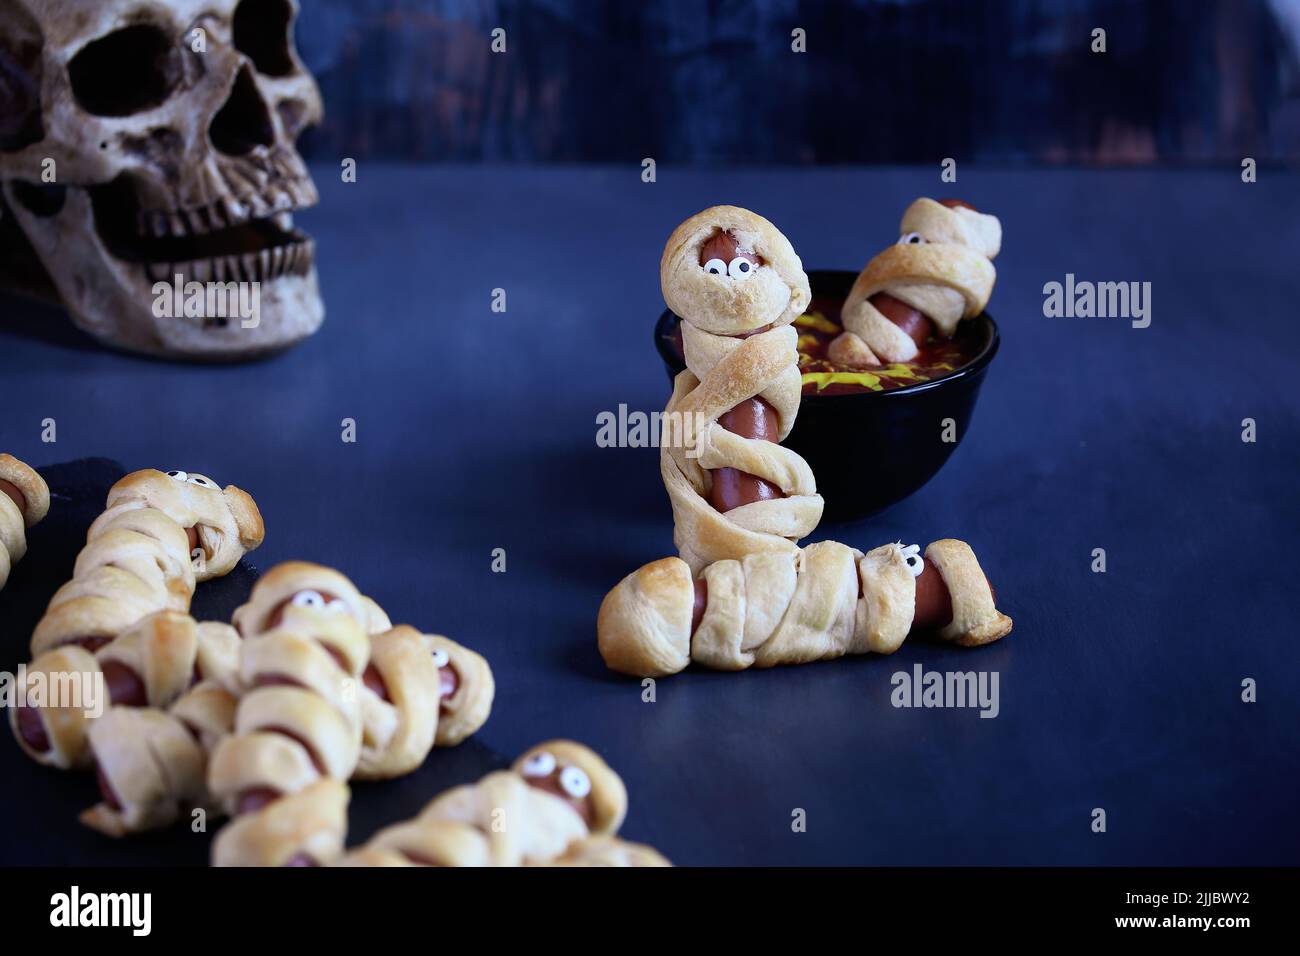 Comida divertida para los niños. Momia los perros calientes (o los cerdos en una manta) en una mesa rústica azul con un tazón de ketchup y salsa de mostaza, con diseño de tela de araña. Blurre Foto de stock